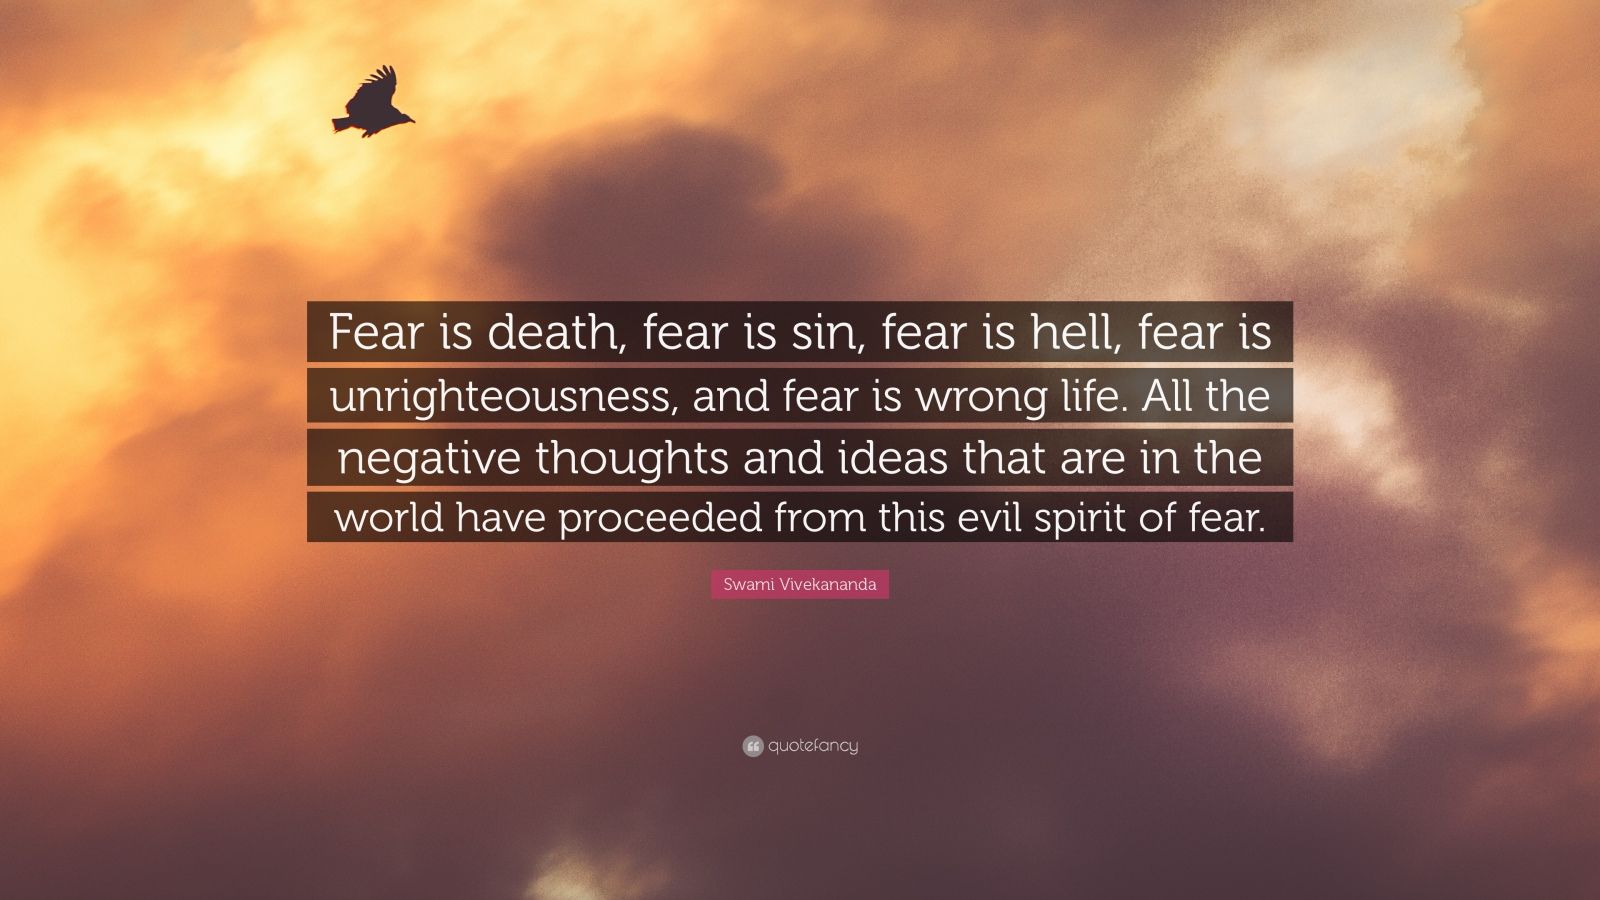 Swami Vivekananda Quote “Fear is fear is sin fear is hell